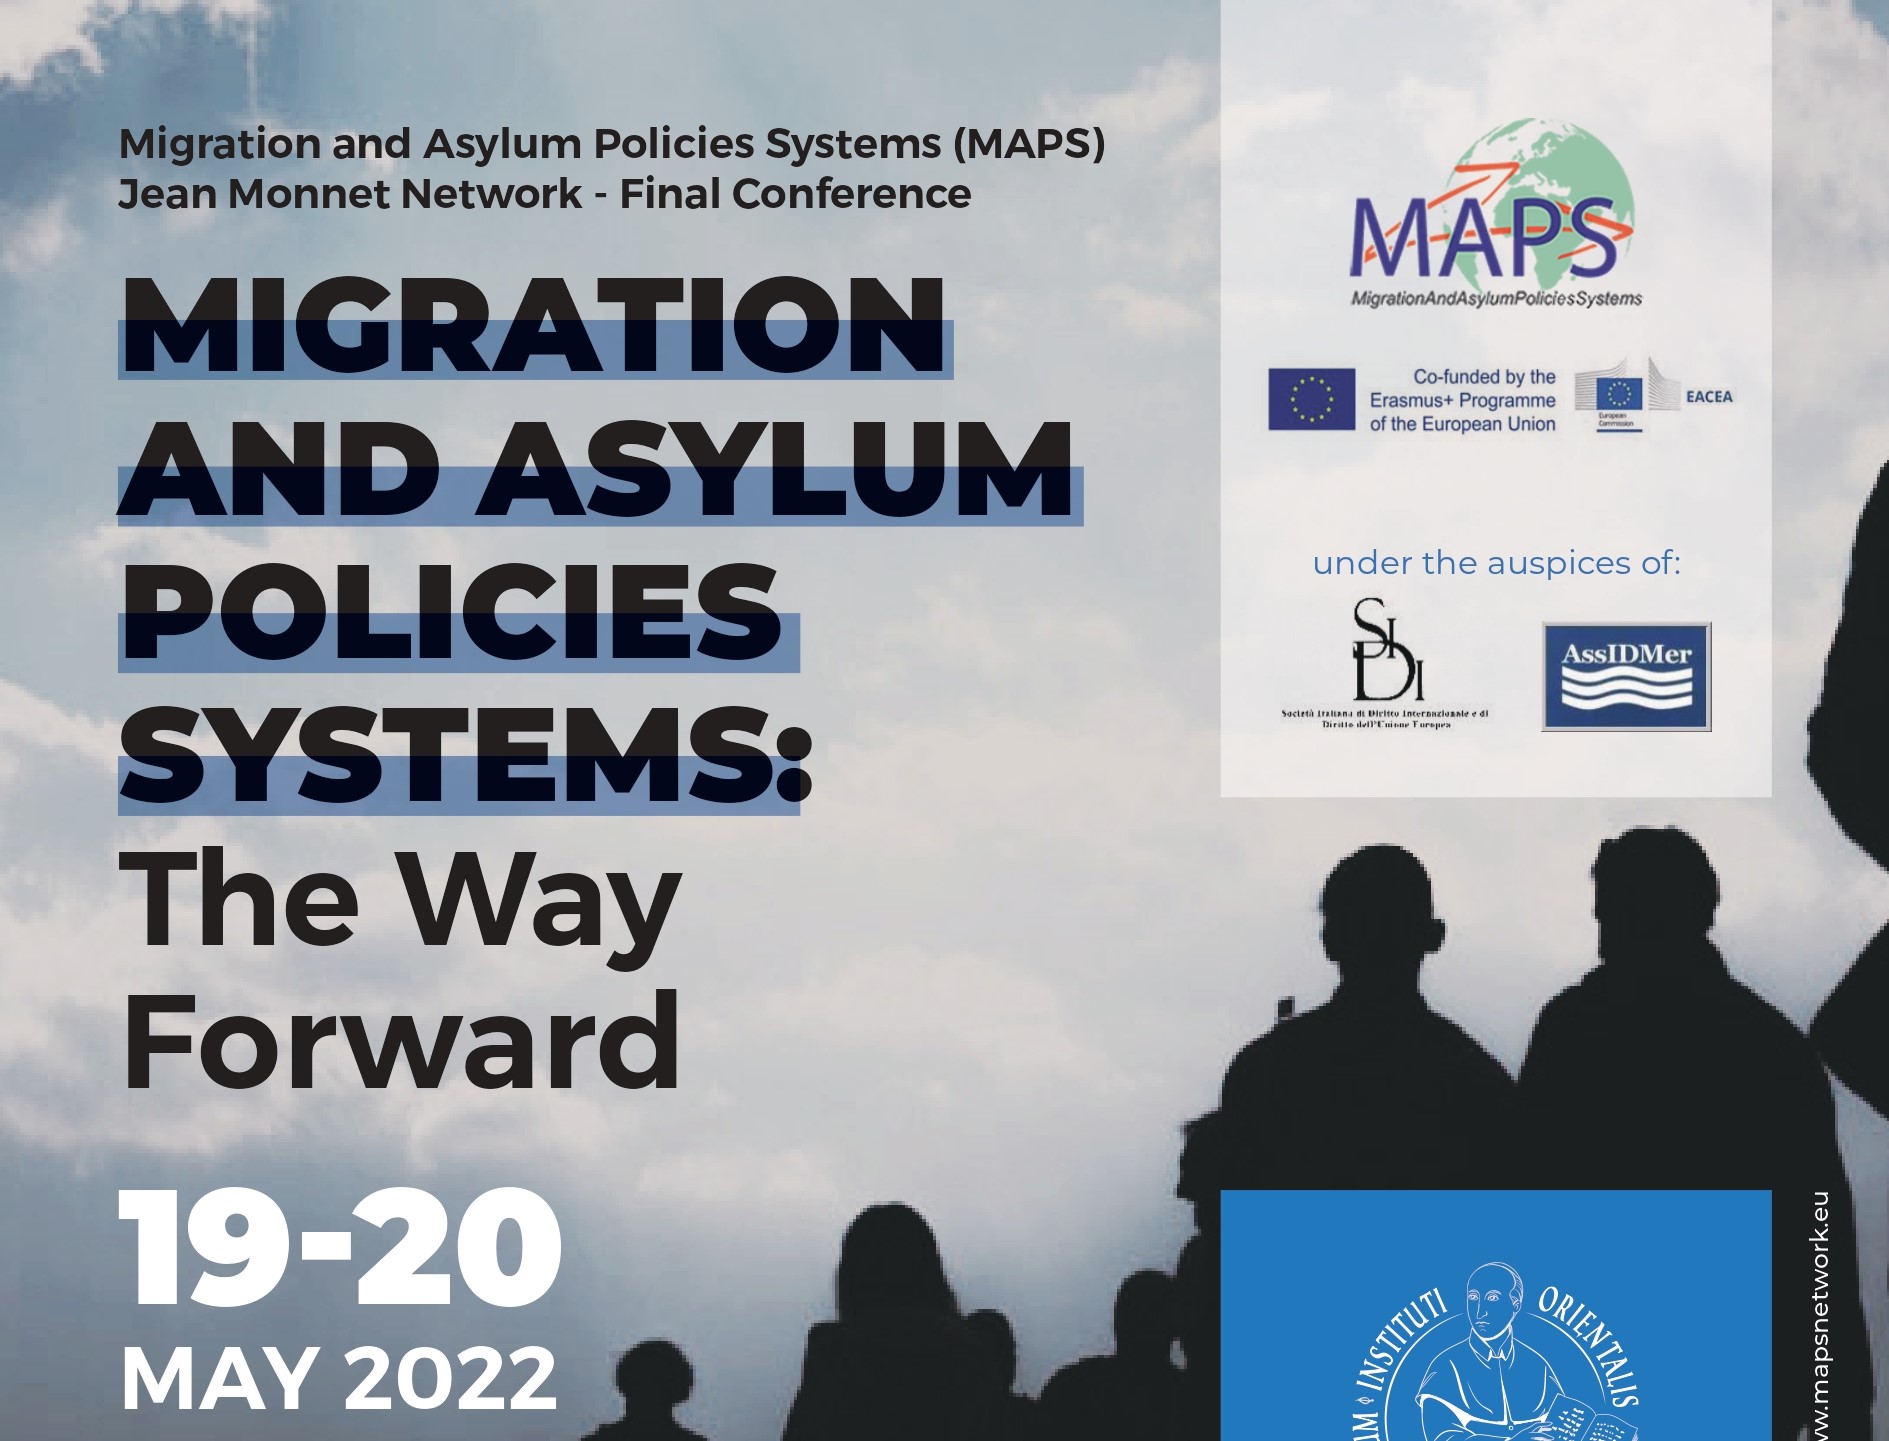 All’Università di Napoli “L’Orientale”, la conferenza finale del Jean Monnet Network MAPS – Migration and Asylum Policies Systems